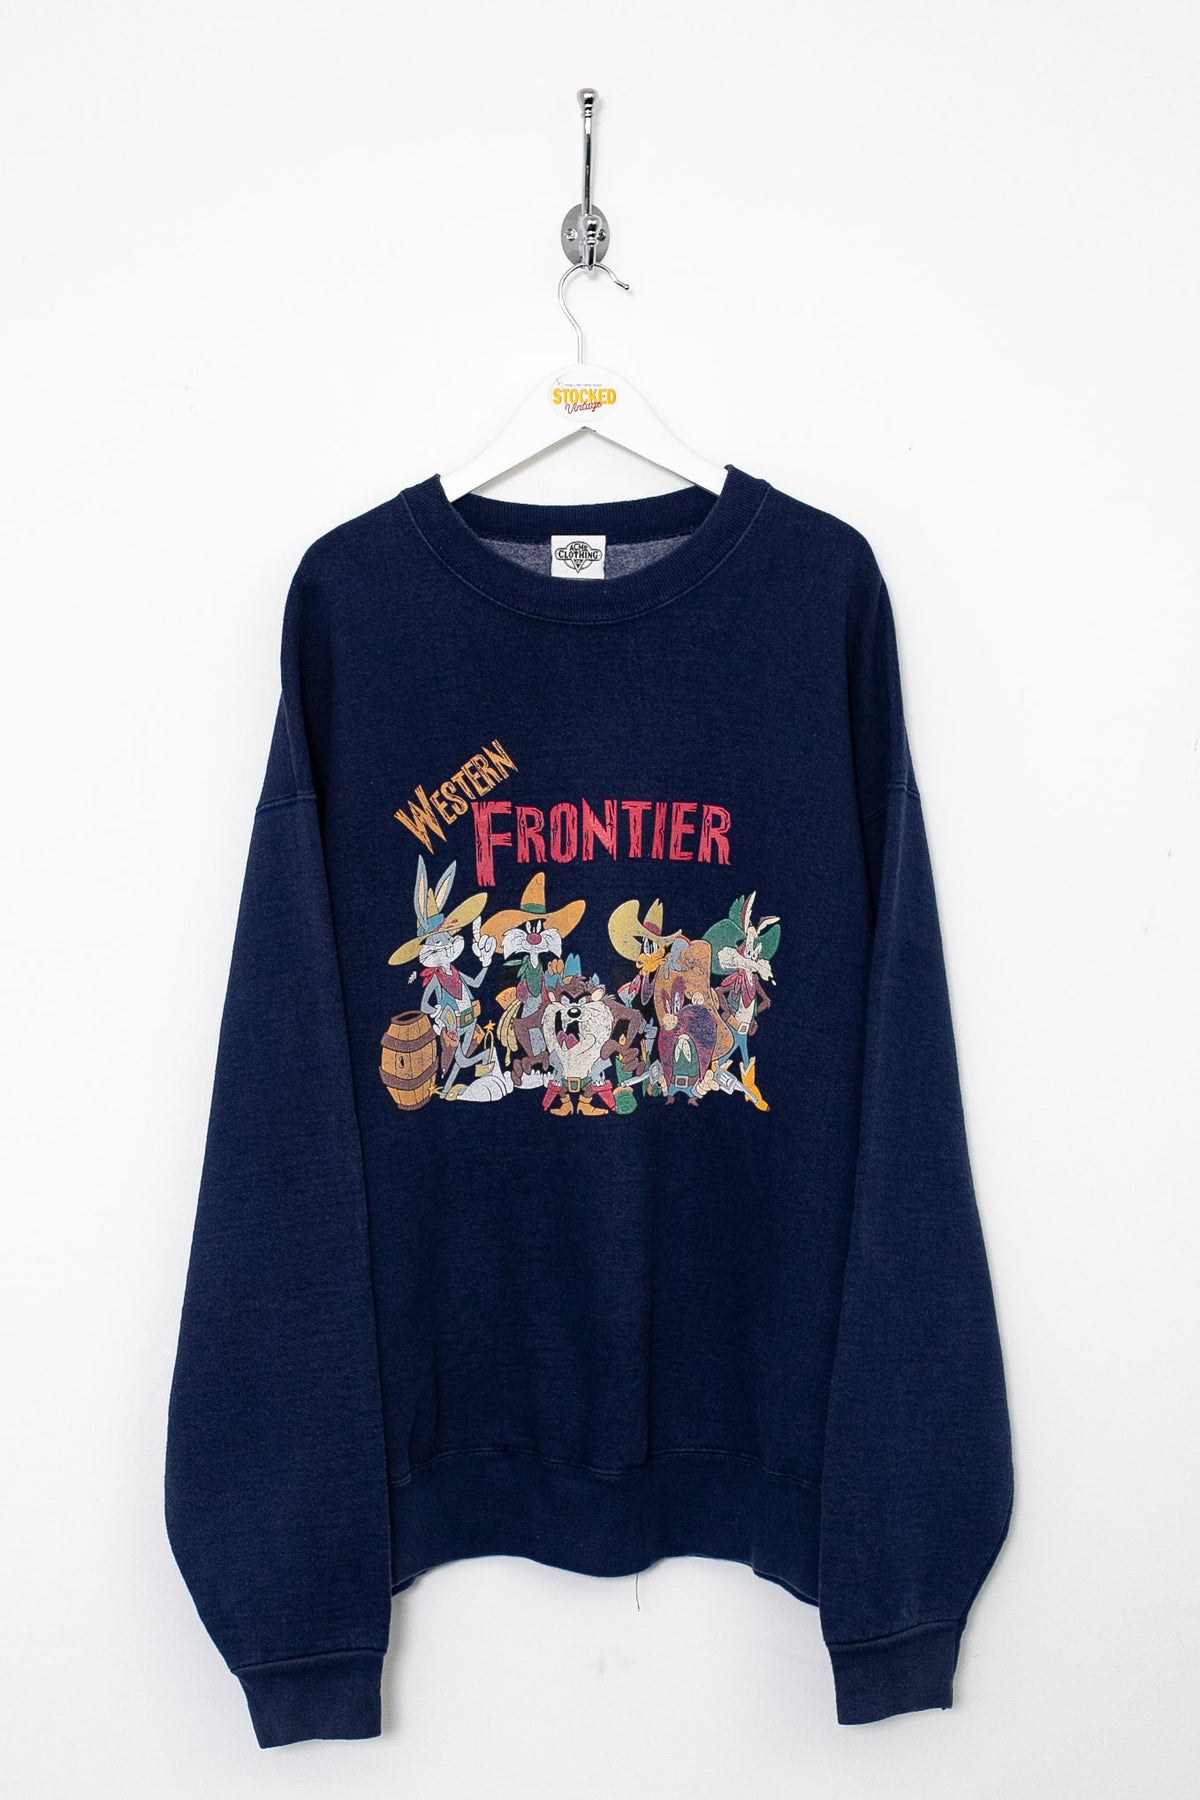 90s Looney Tunes Western Frontier Graphic Sweatshirt (XL)